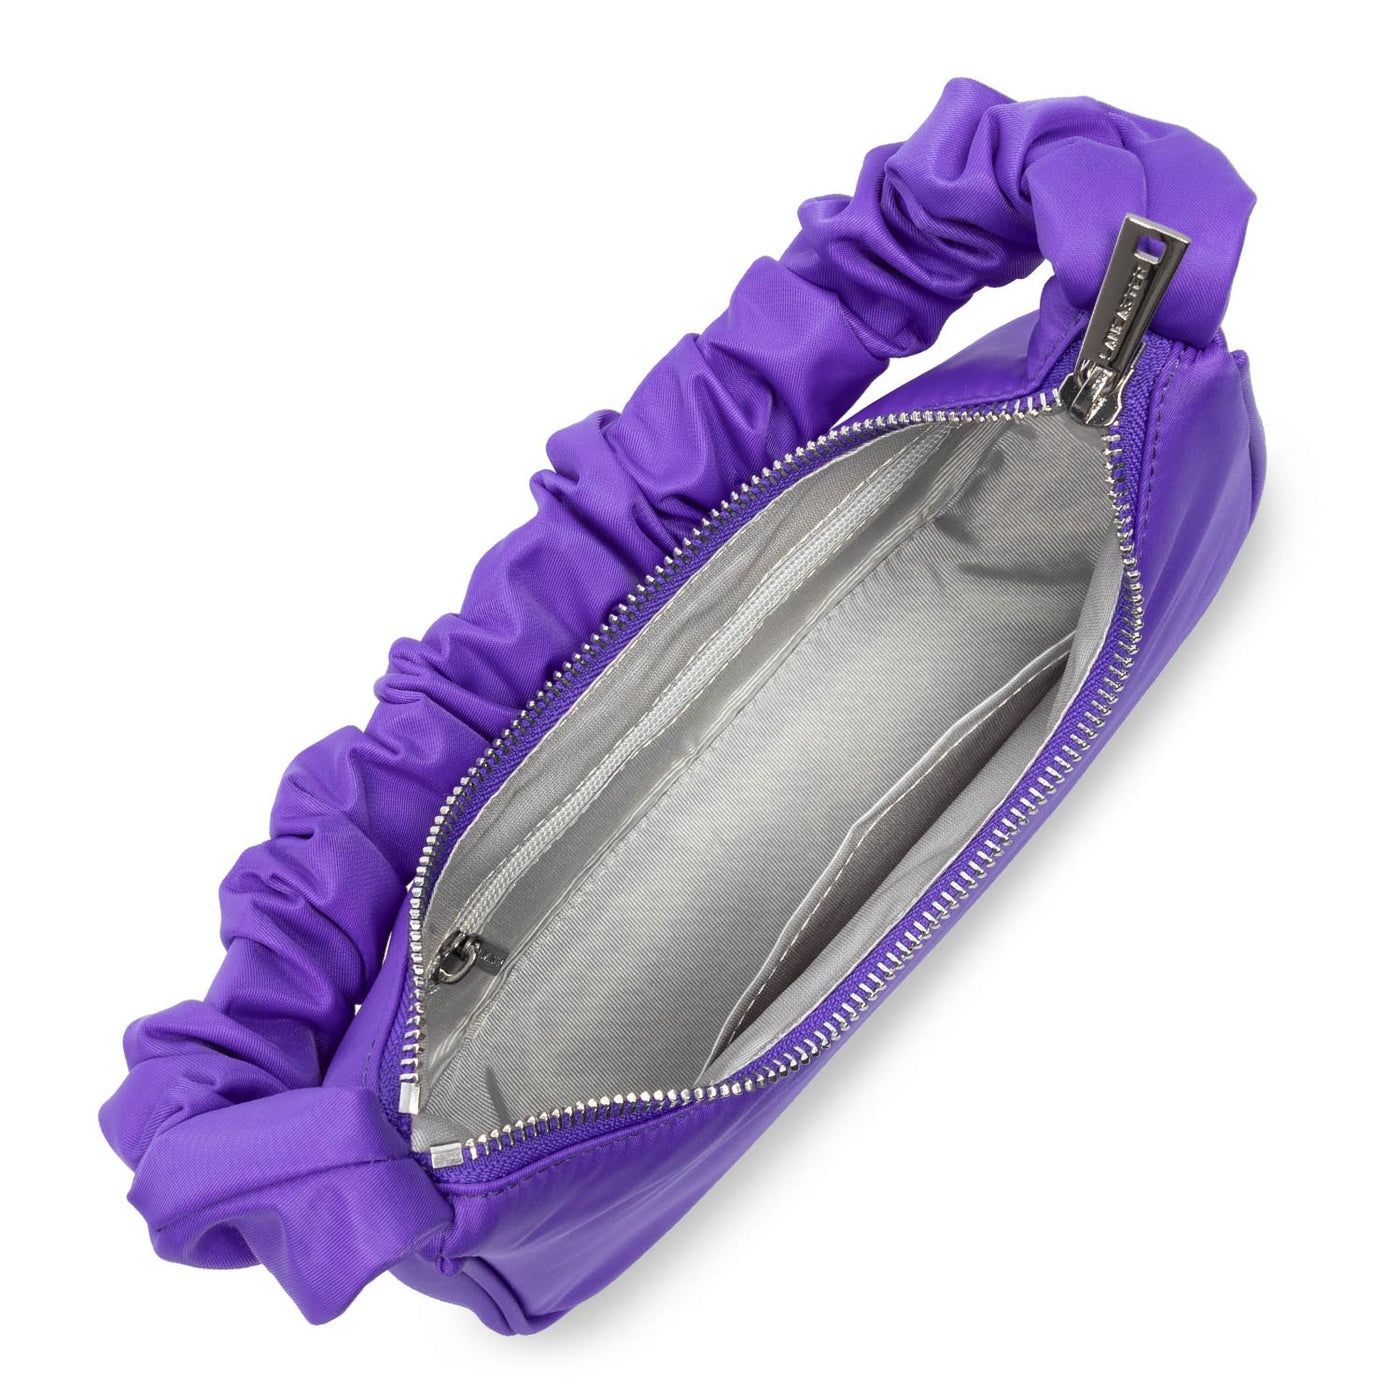 petit sac baguette - basic chouchou #couleur_violette